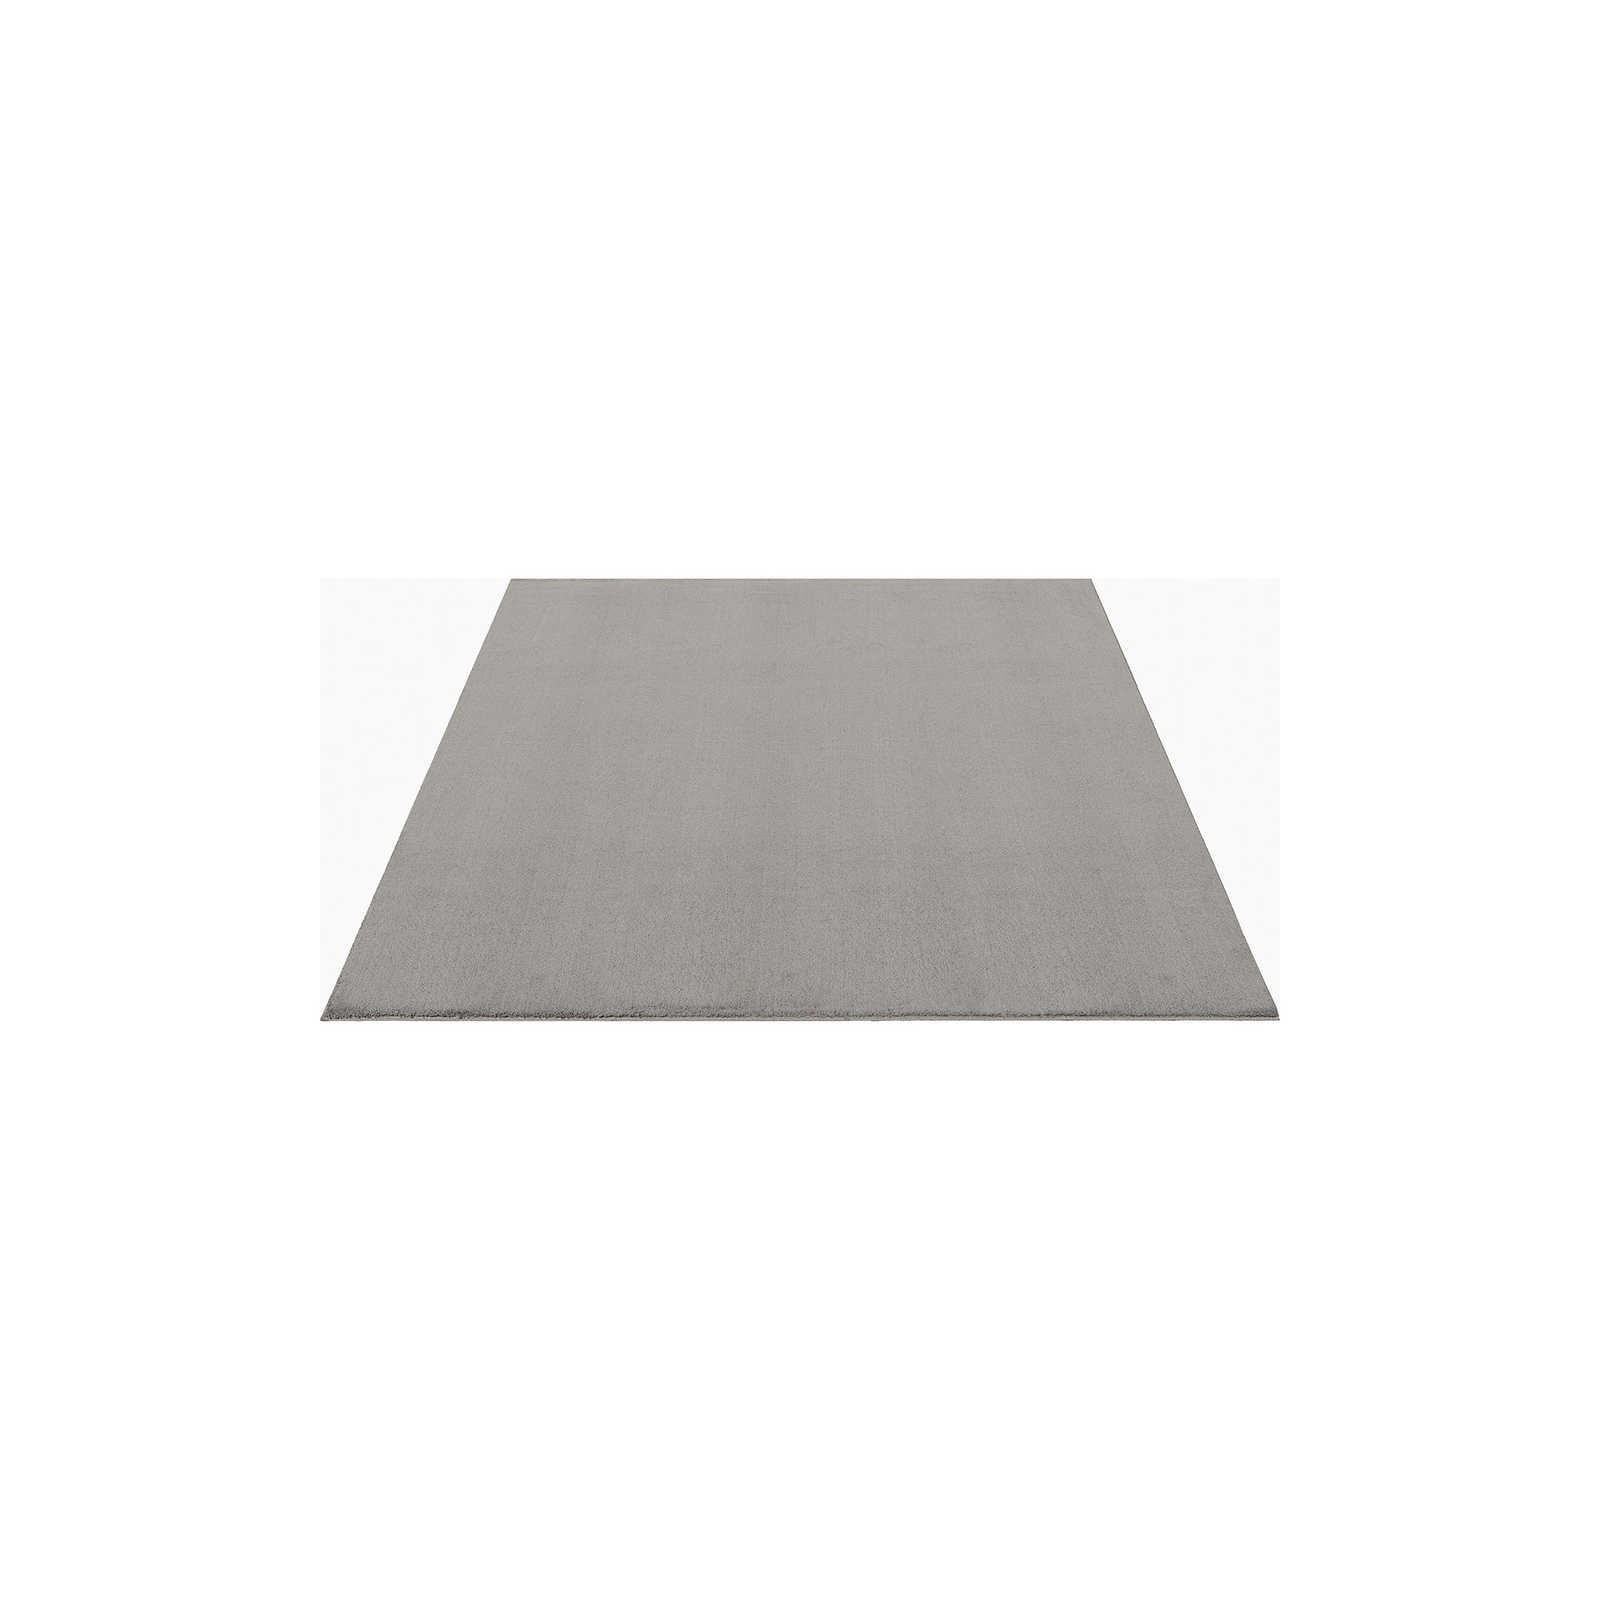 Modischer Hochflor Teppich in Sand – 200 x 140 cm
